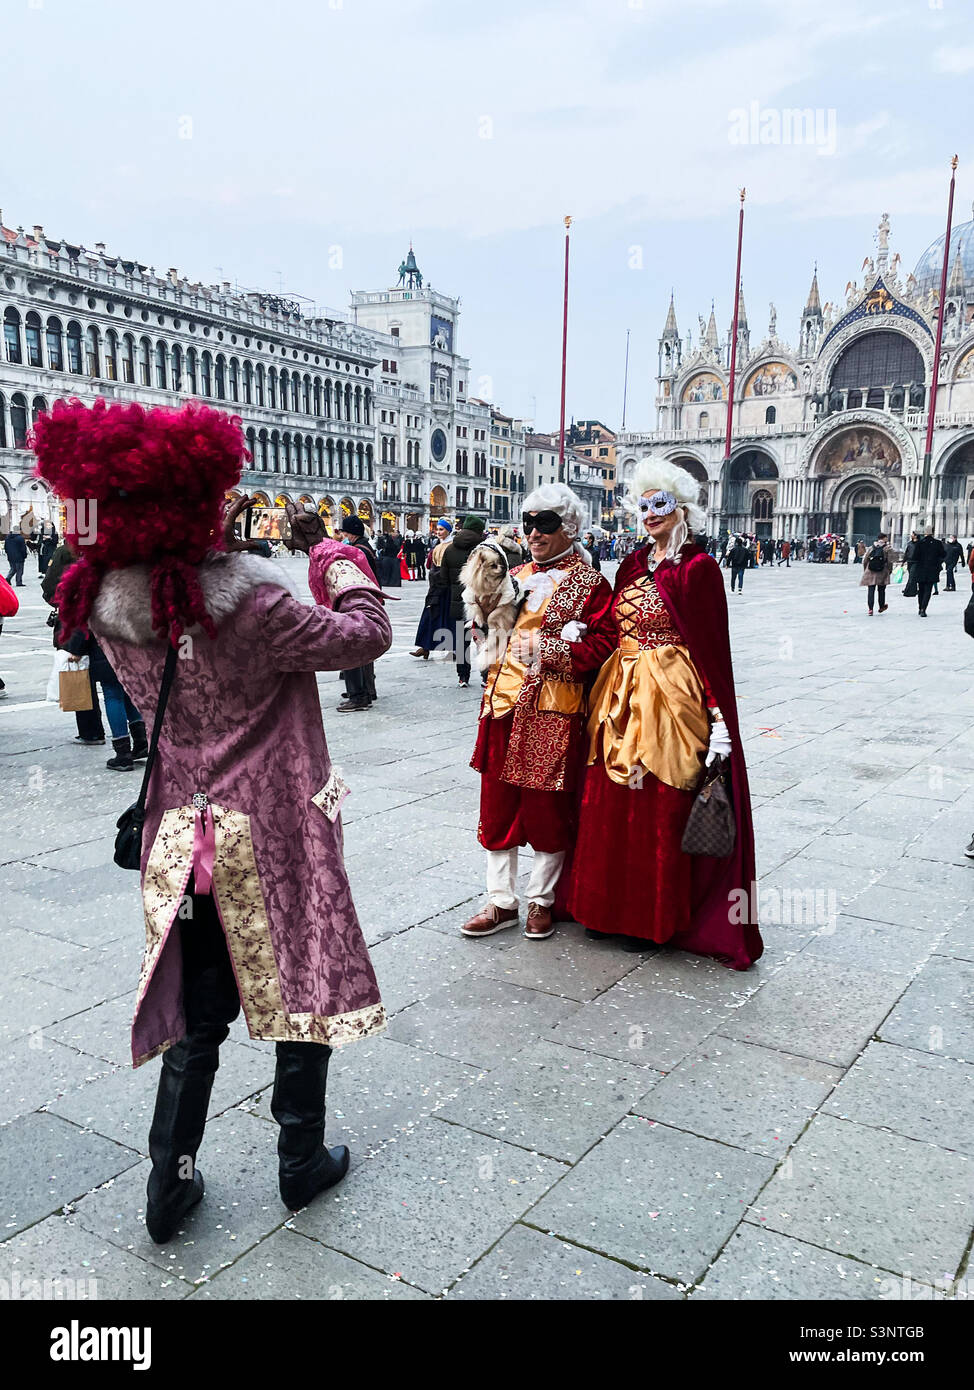 Menschen, die während der Carnevale auf dem Markusplatz in Venedig, Italien, in historischen Kostümen gekleidet waren. Auf Mann in Kostüm ist ein Foto von einem Paar auch für die Feierlichkeiten gekleidet. Stockfoto